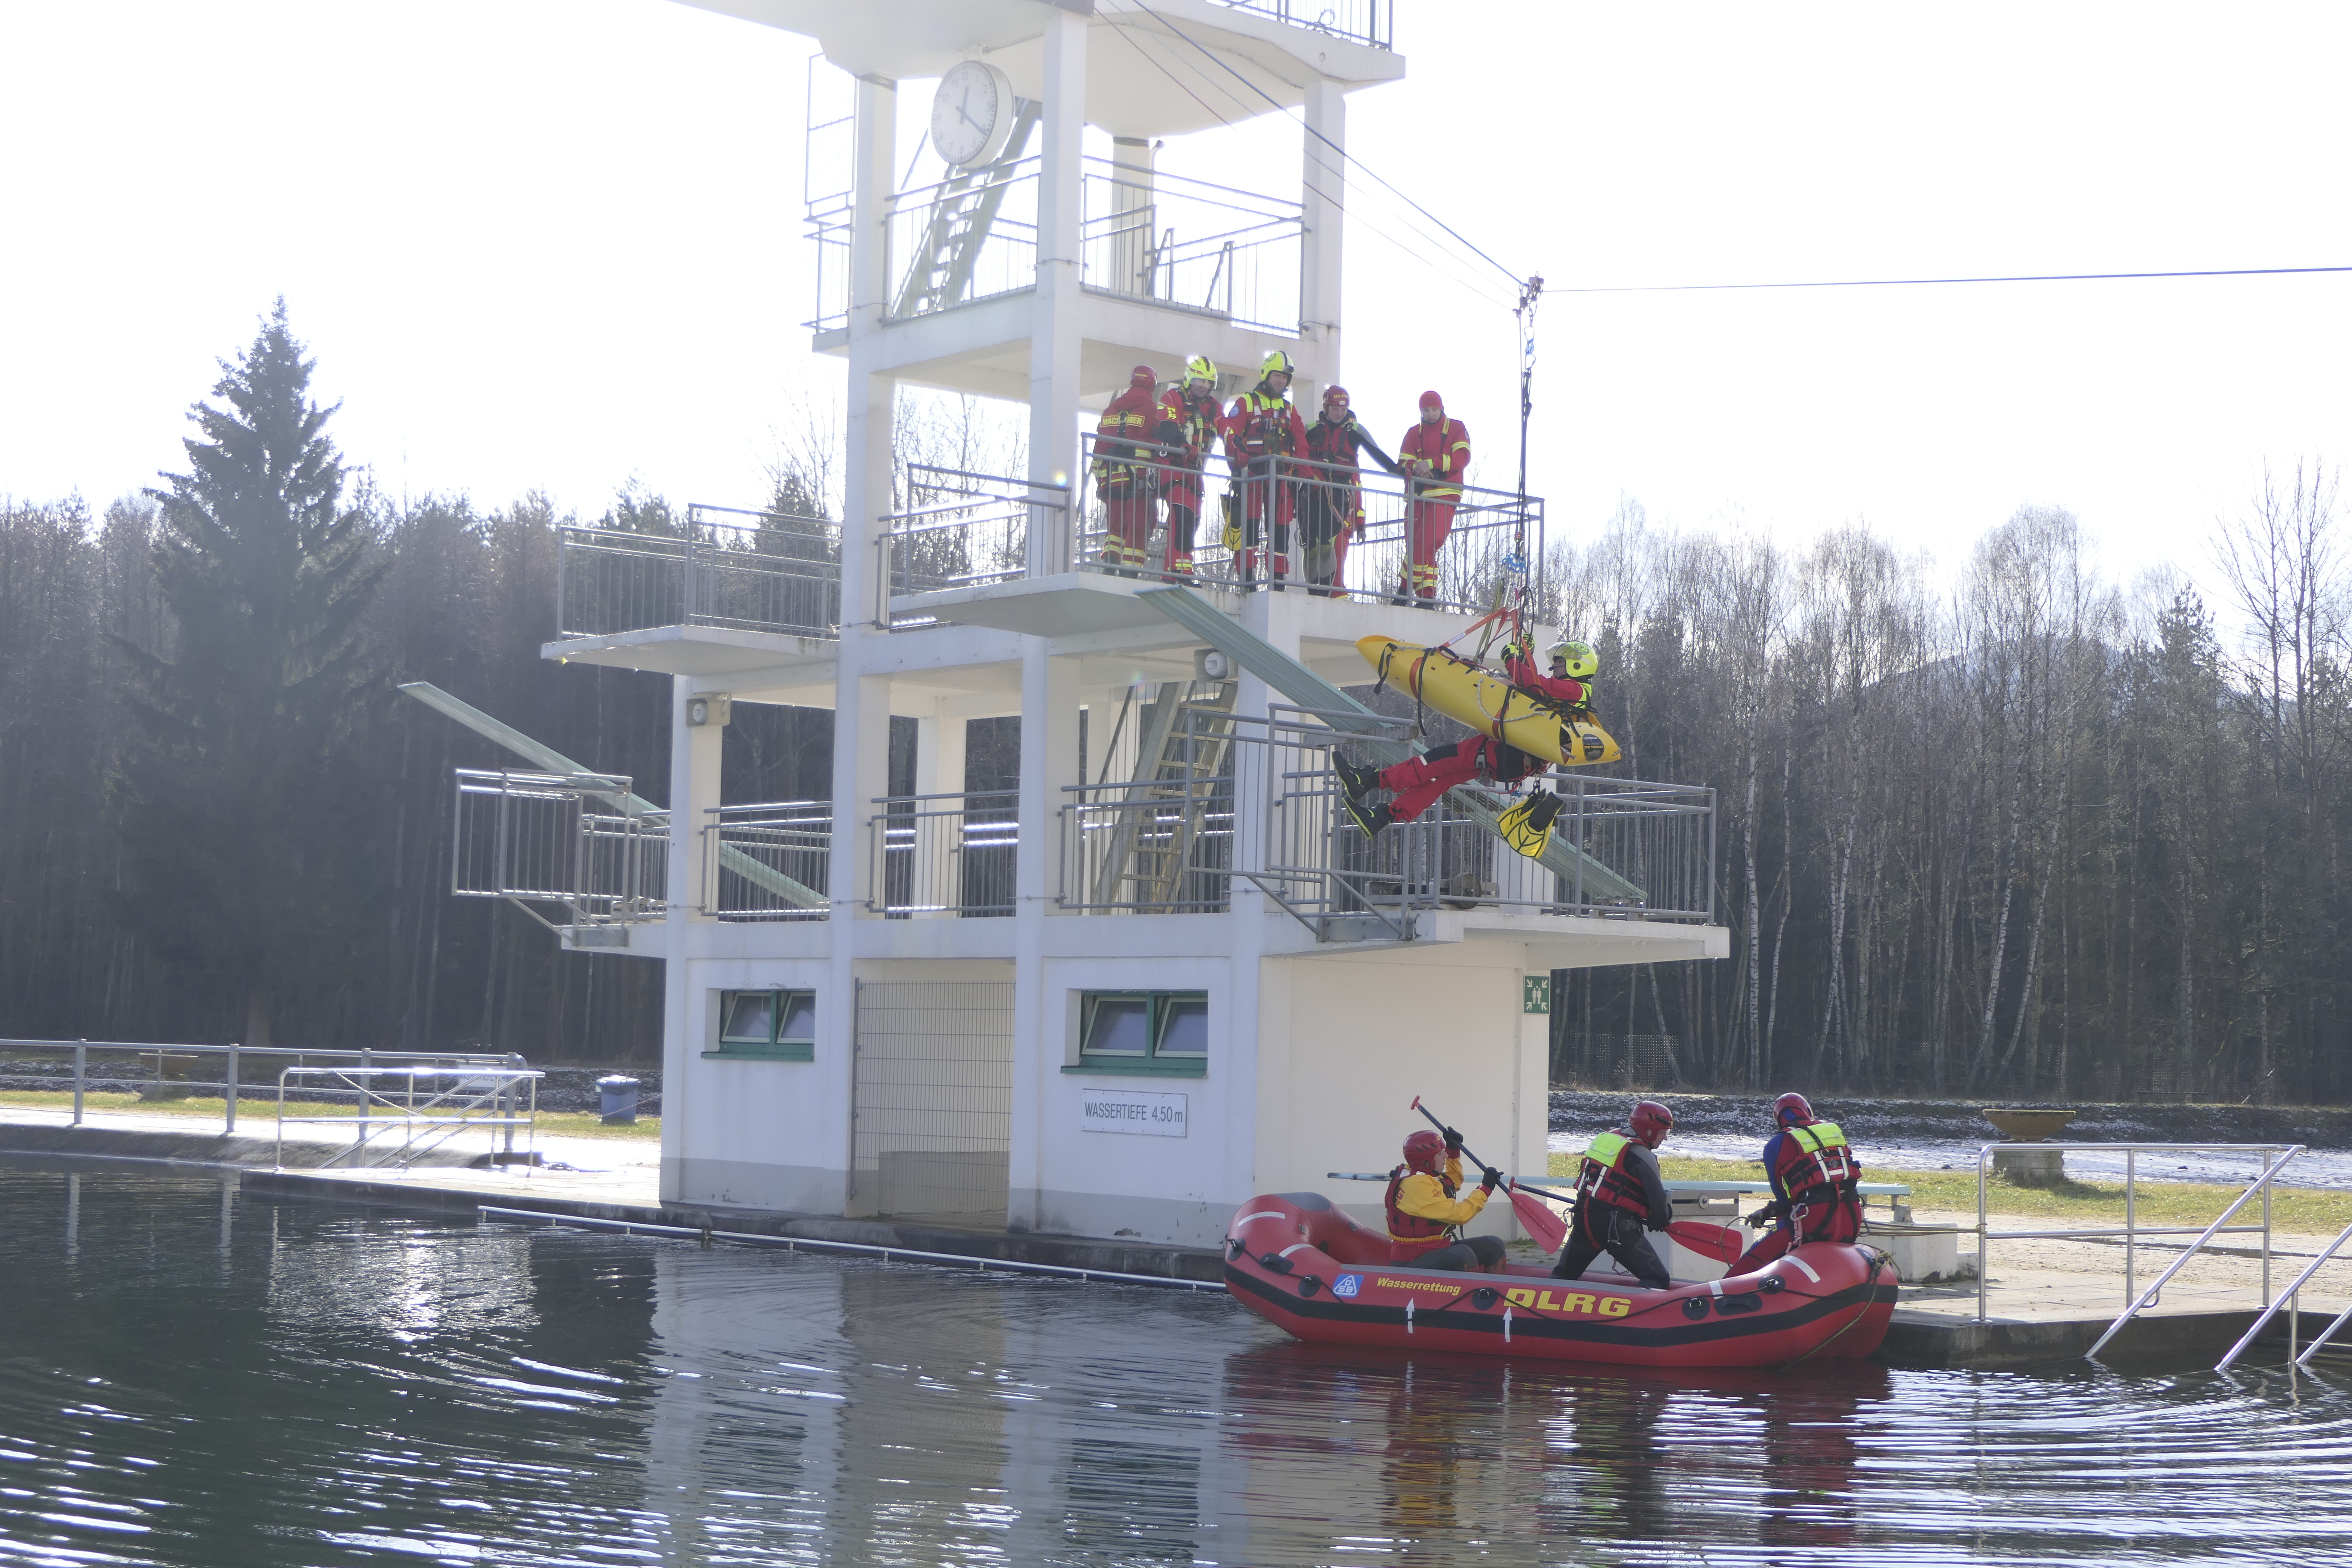 Emergencia en vivo | La aparición del HRS - Surf Life Rescue: imagen de seguridad y rescate acuático 60